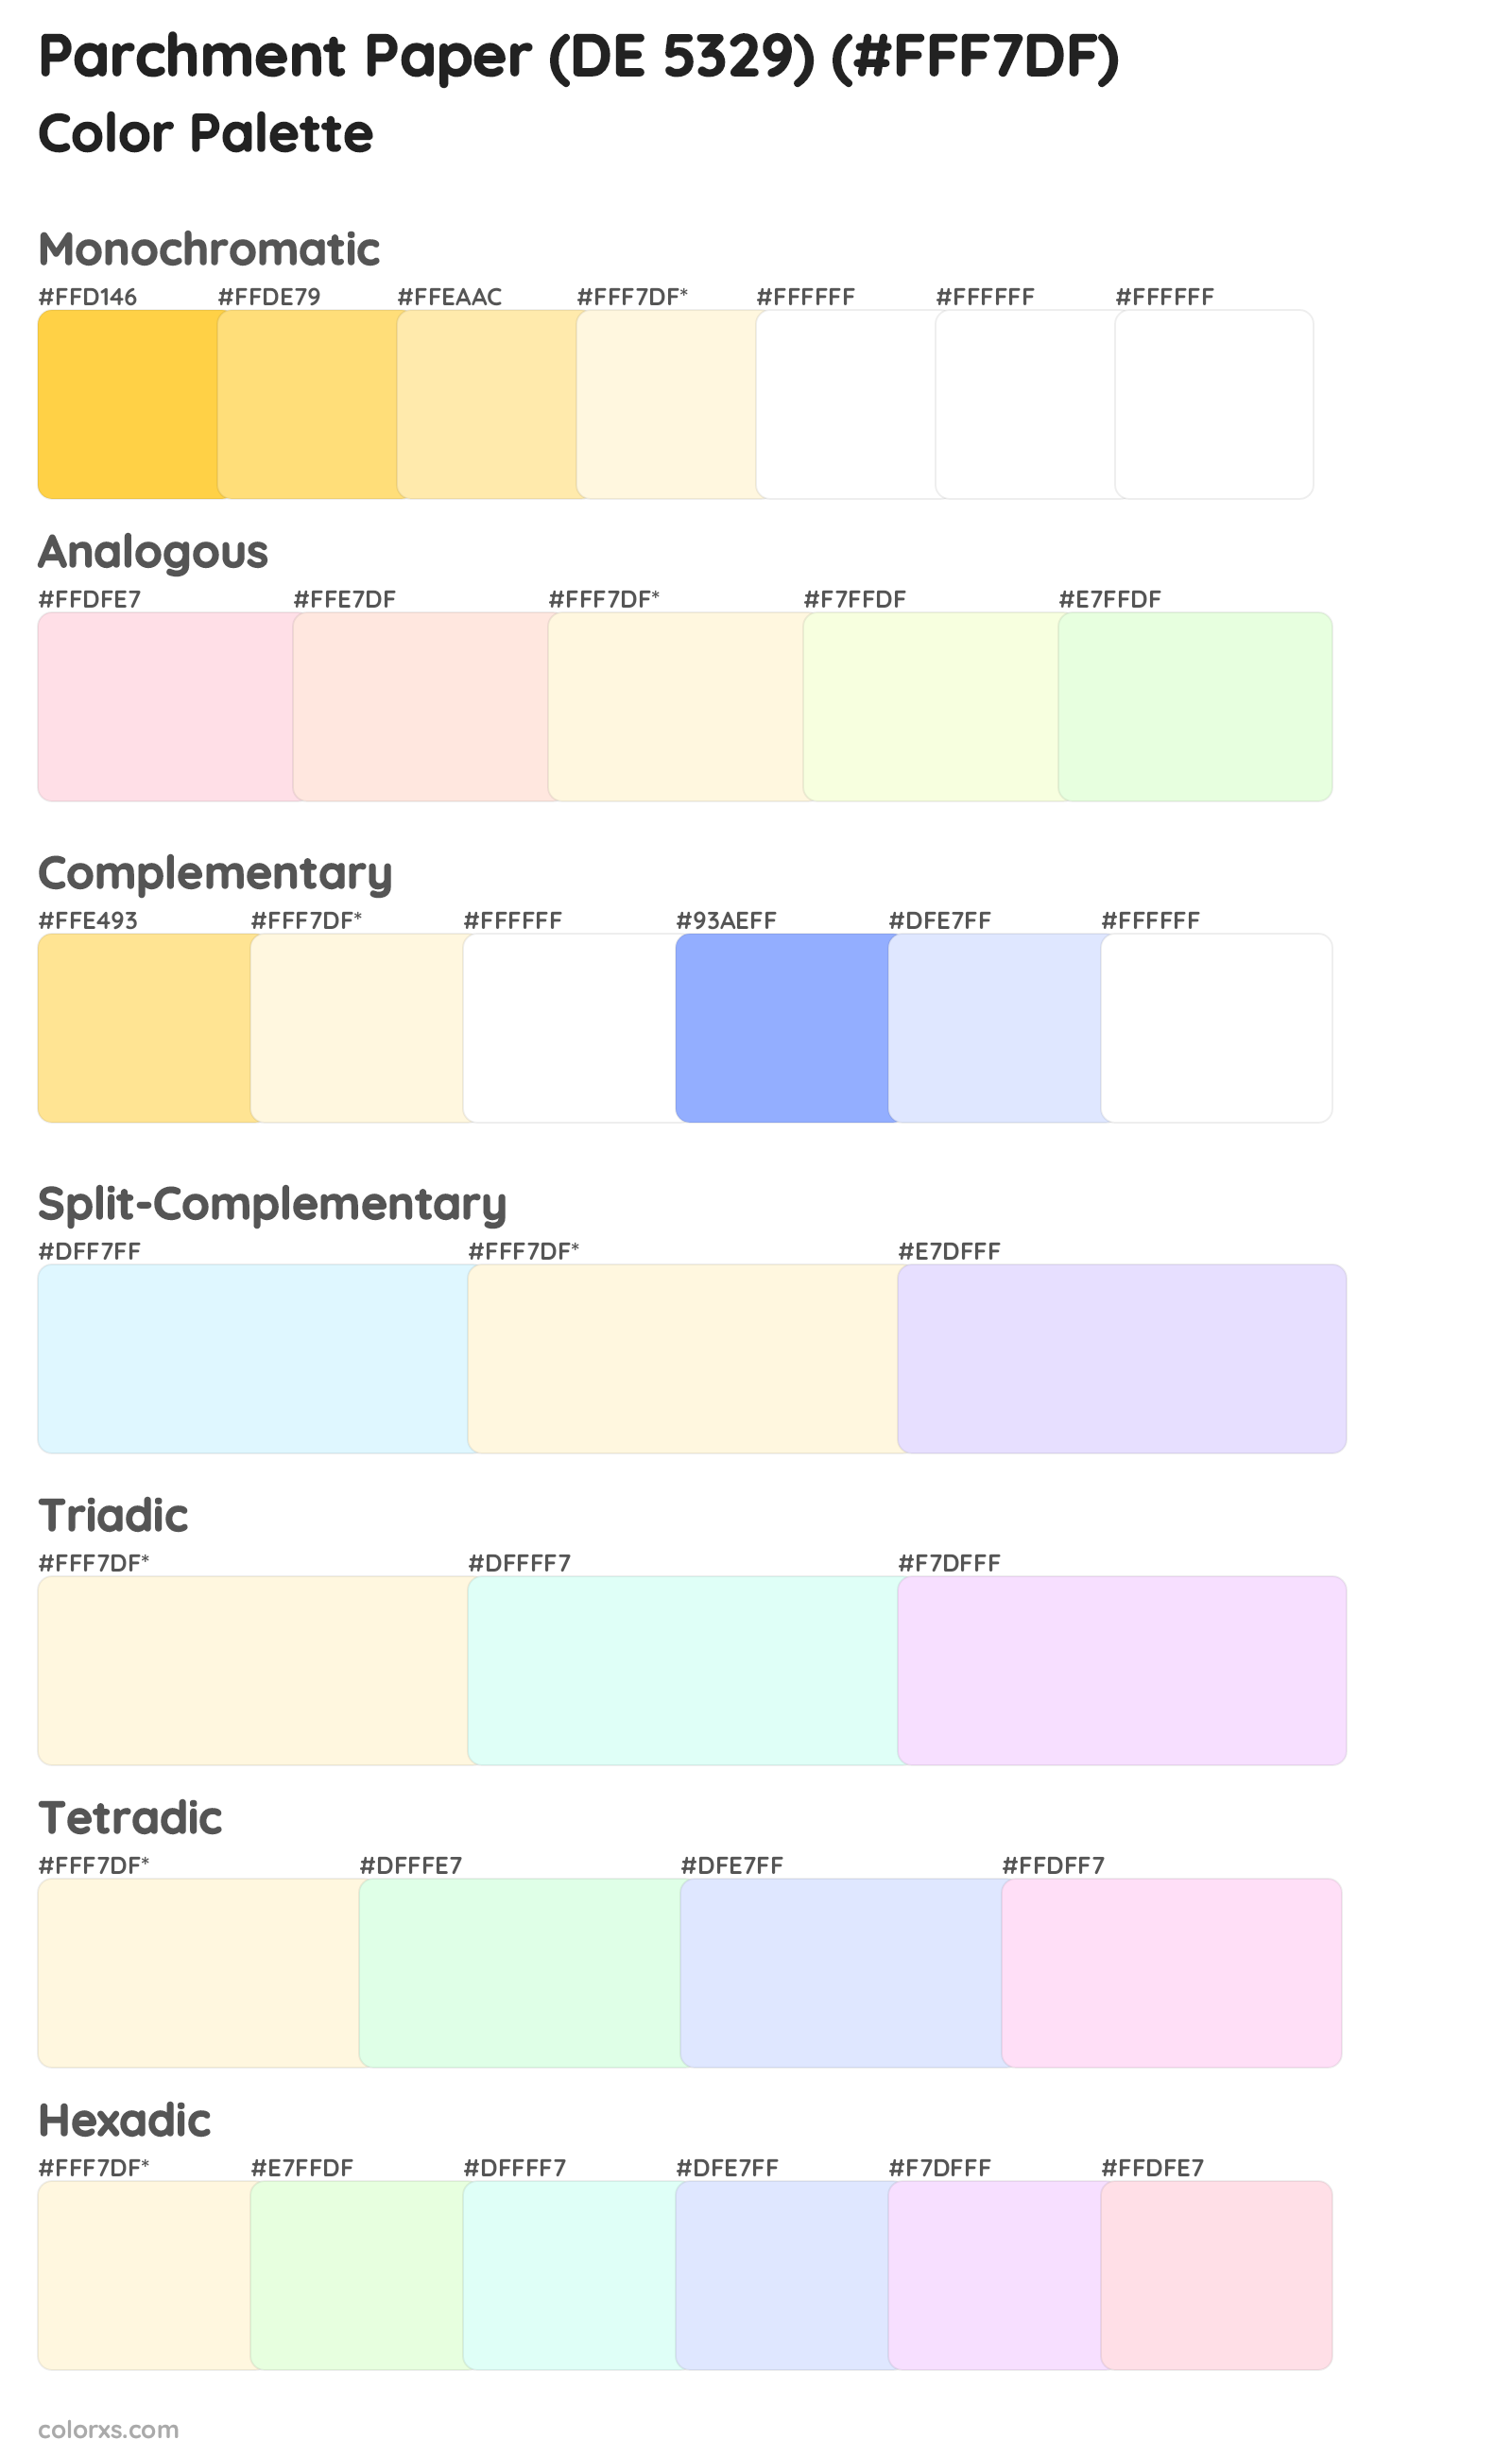 Parchment Paper (DE 5329) Color Scheme Palettes